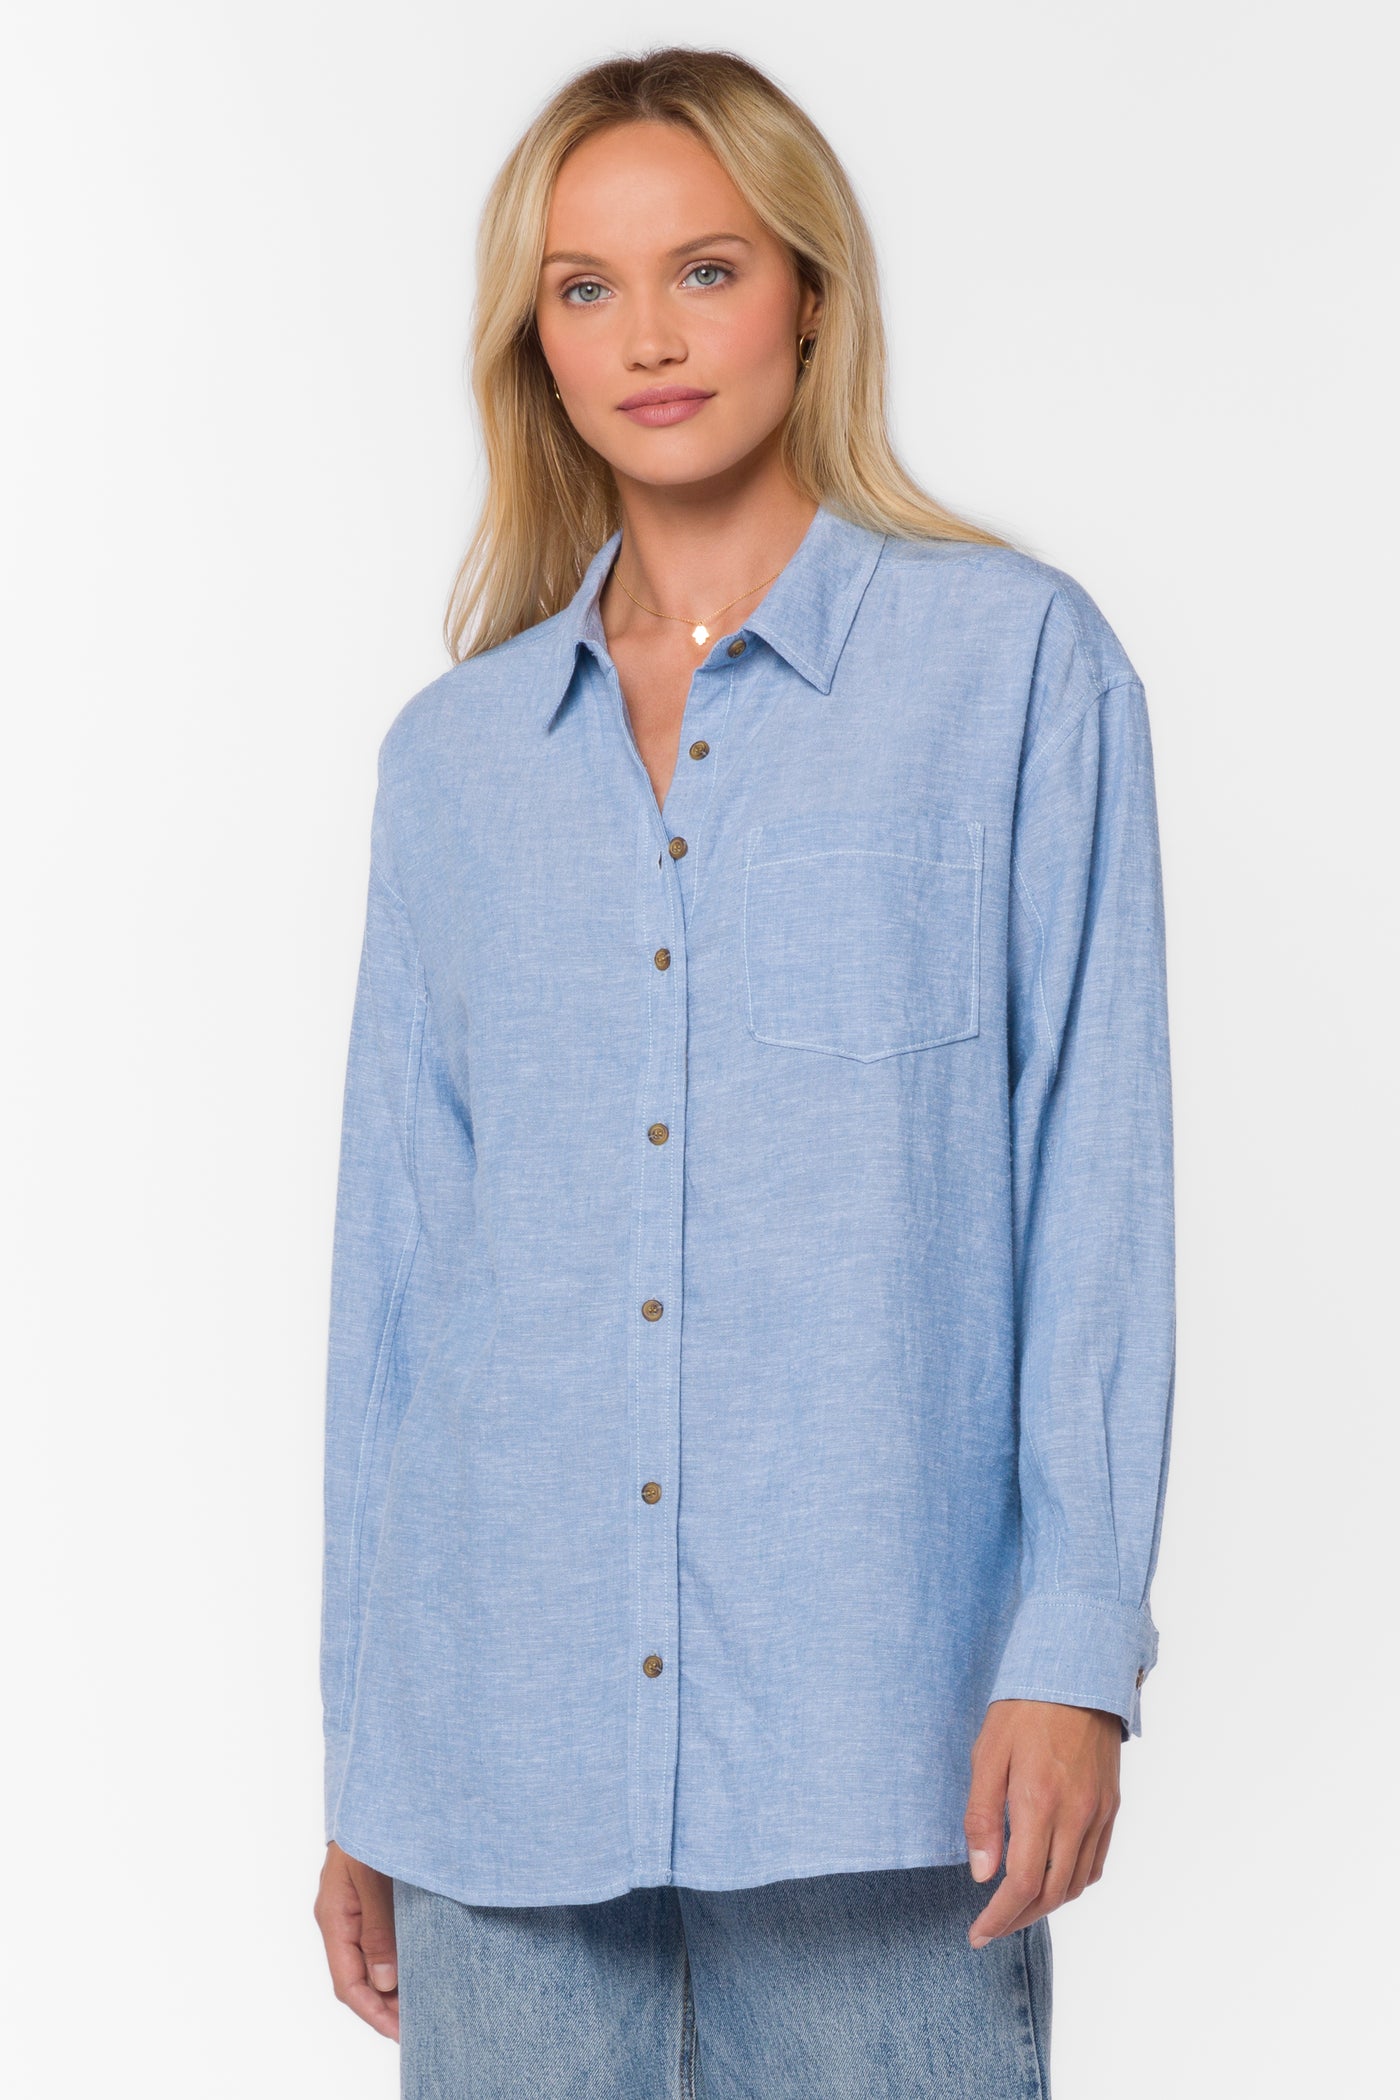 Sandy Blue Shirt - Tops - Velvet Heart Clothing